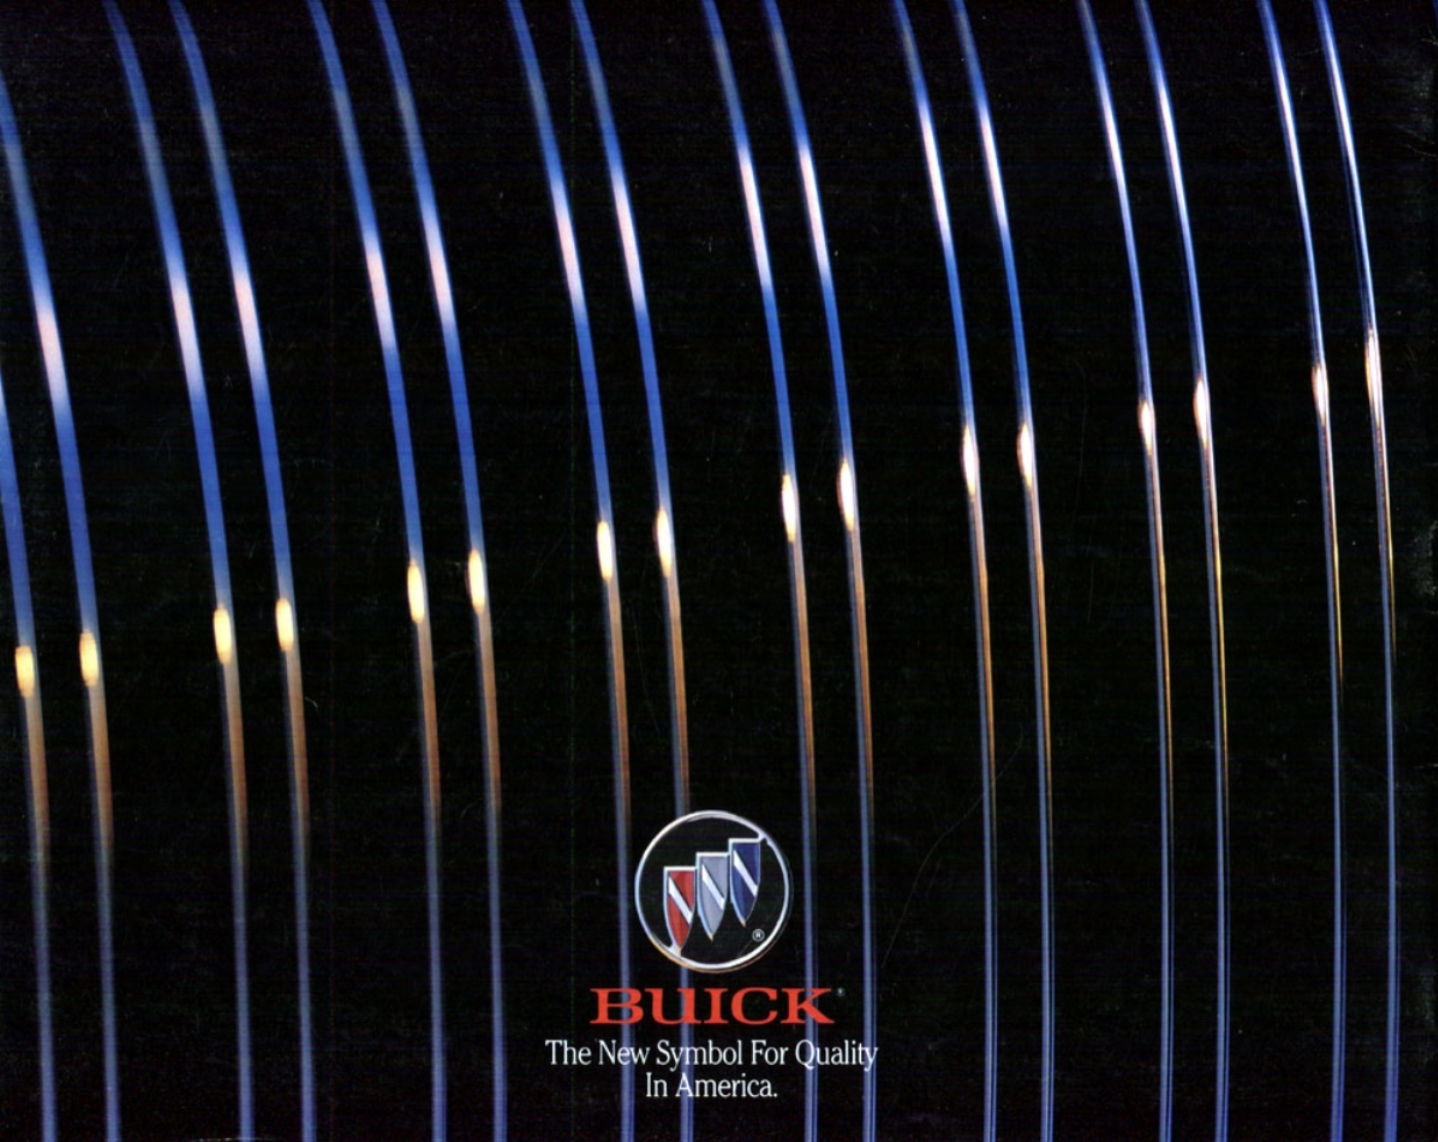 1992 Buick Full Line-46